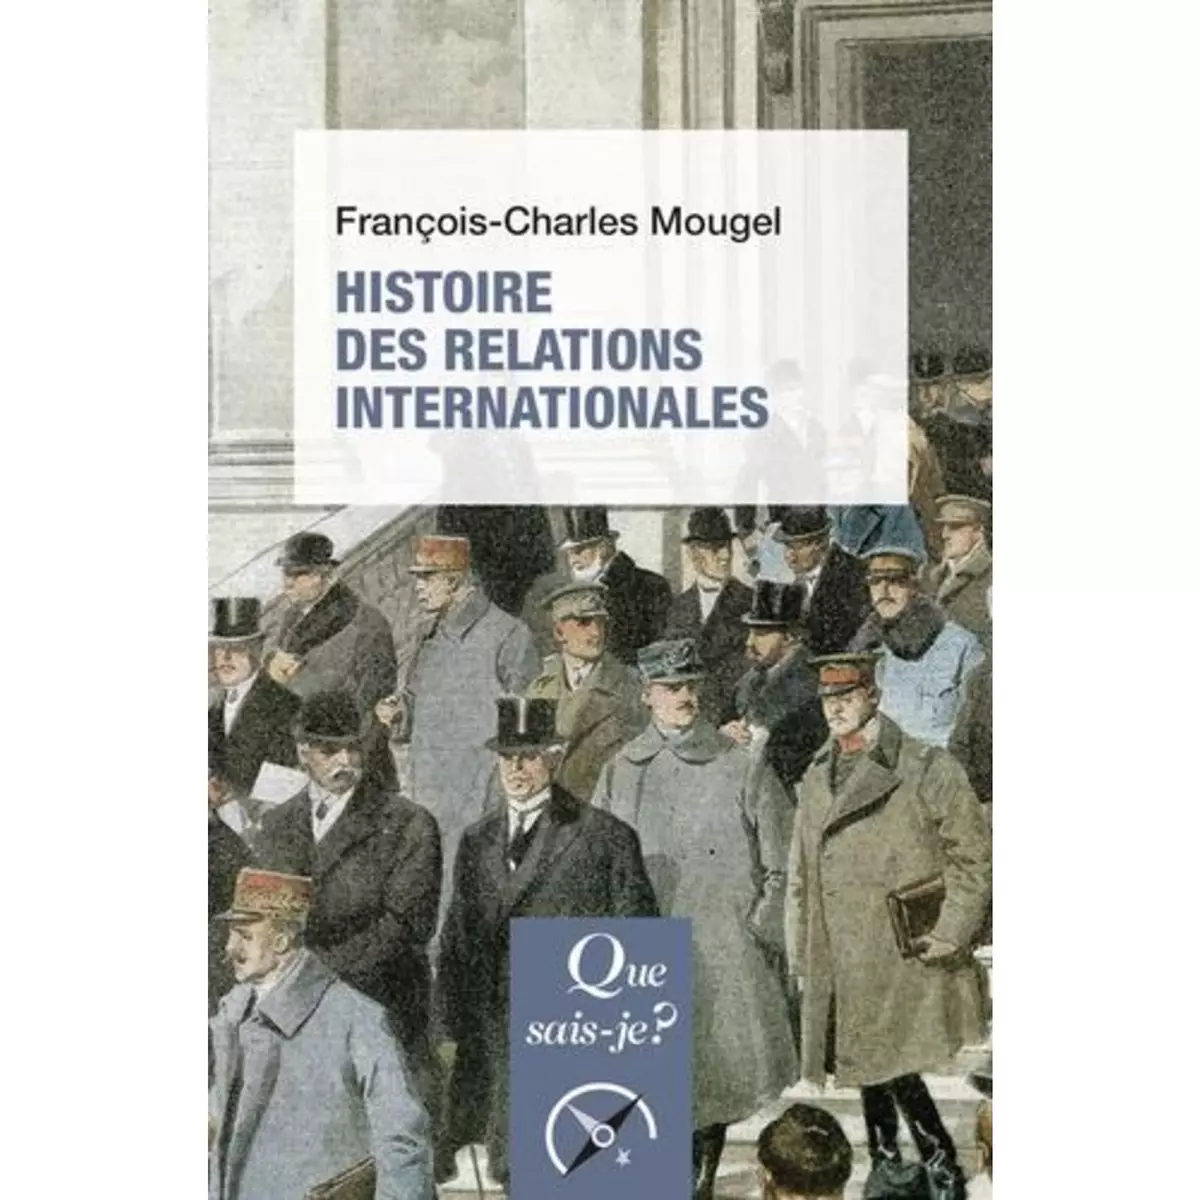  HISTOIRE DES RELATIONS INTERNATIONALES. DE 1815 A NOS JOURS, 16E EDITION, Mougel François-Charles